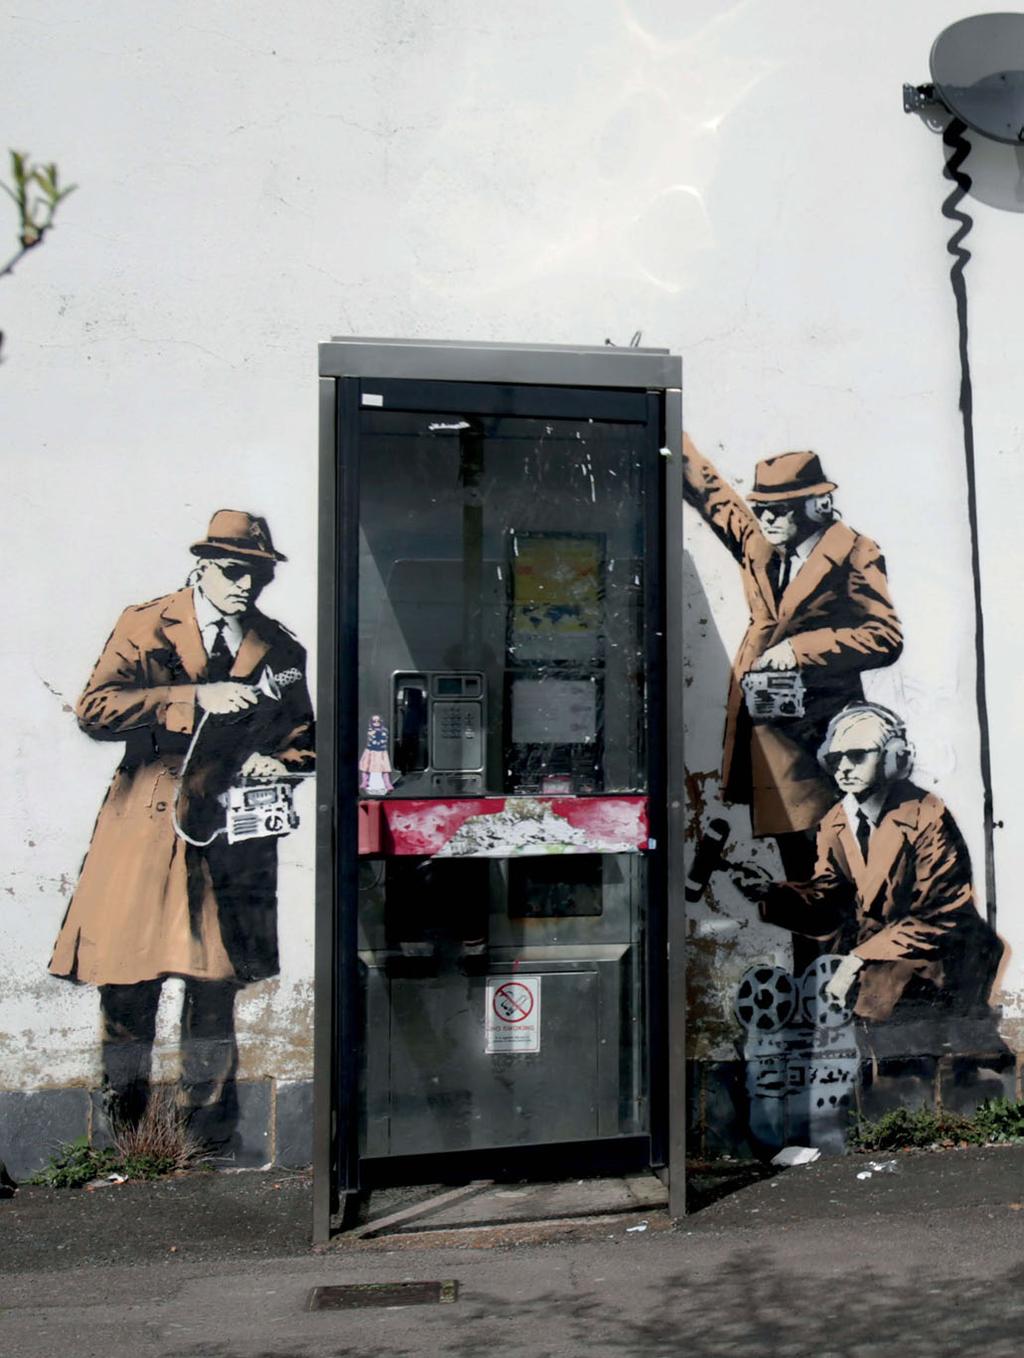 ρεπορταζ Μας ακούνε Δείγμα βρετανικής street art σε τοίχο της λουτρόπολης του Τσέλτενχαμ, πιθανώς το πιο πρόσφατο σχόλιο του μάγου